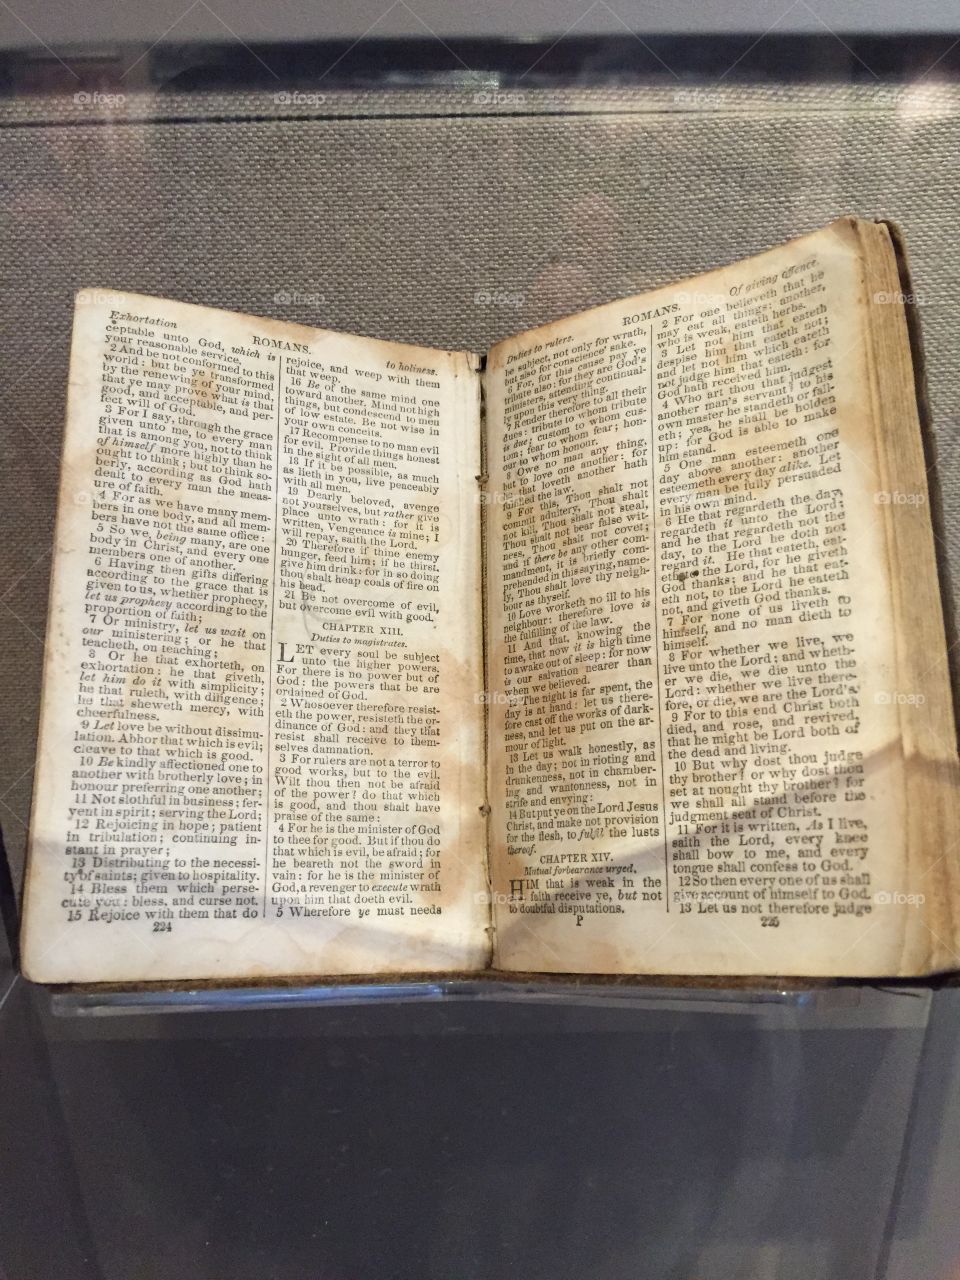 Bible found on Civil War Battleground